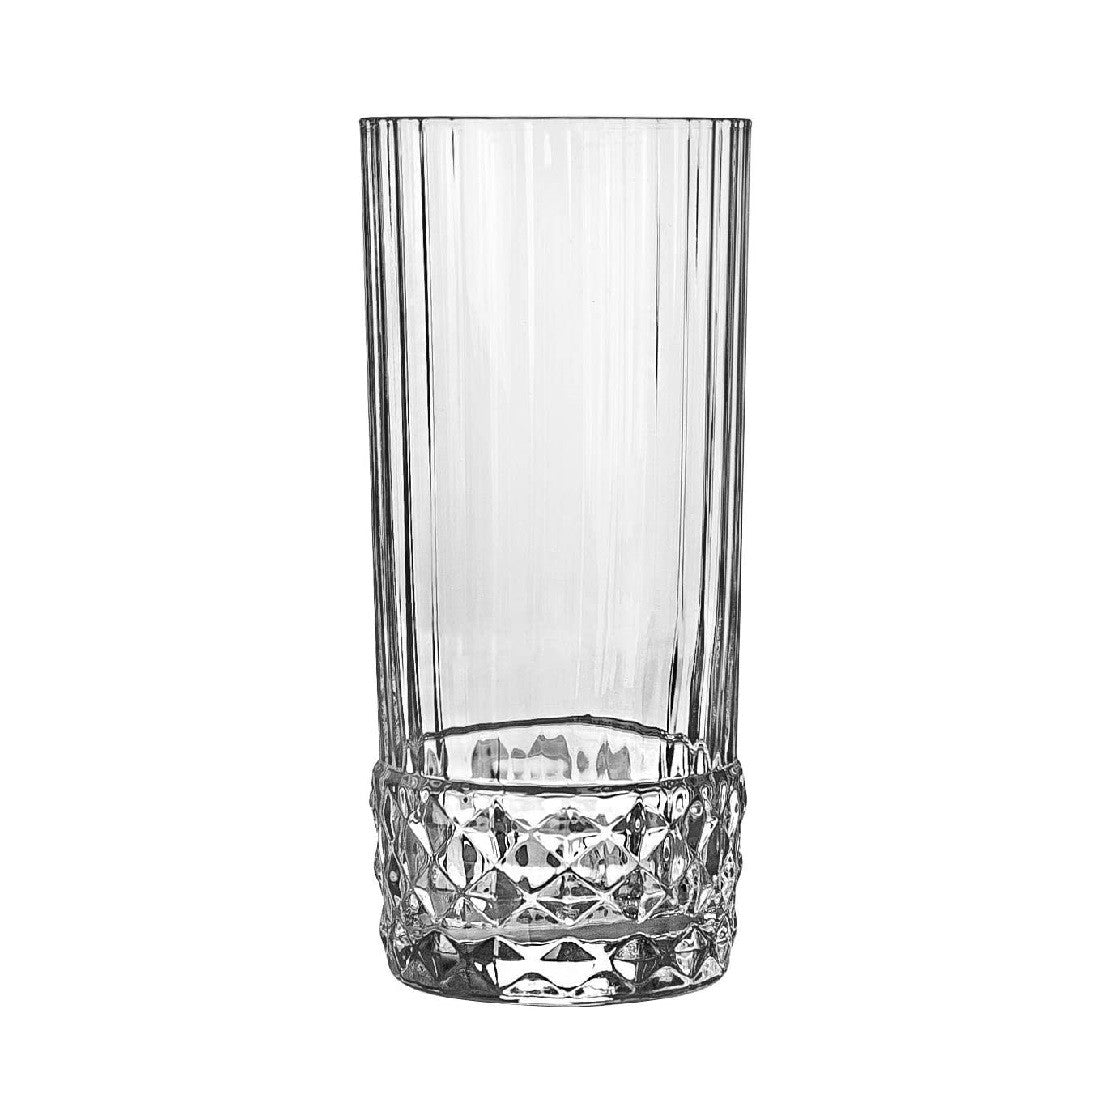 Longdrinkglas Americas ´20s 480ml Trinkglas Becher Retro Vintage Kristallglas